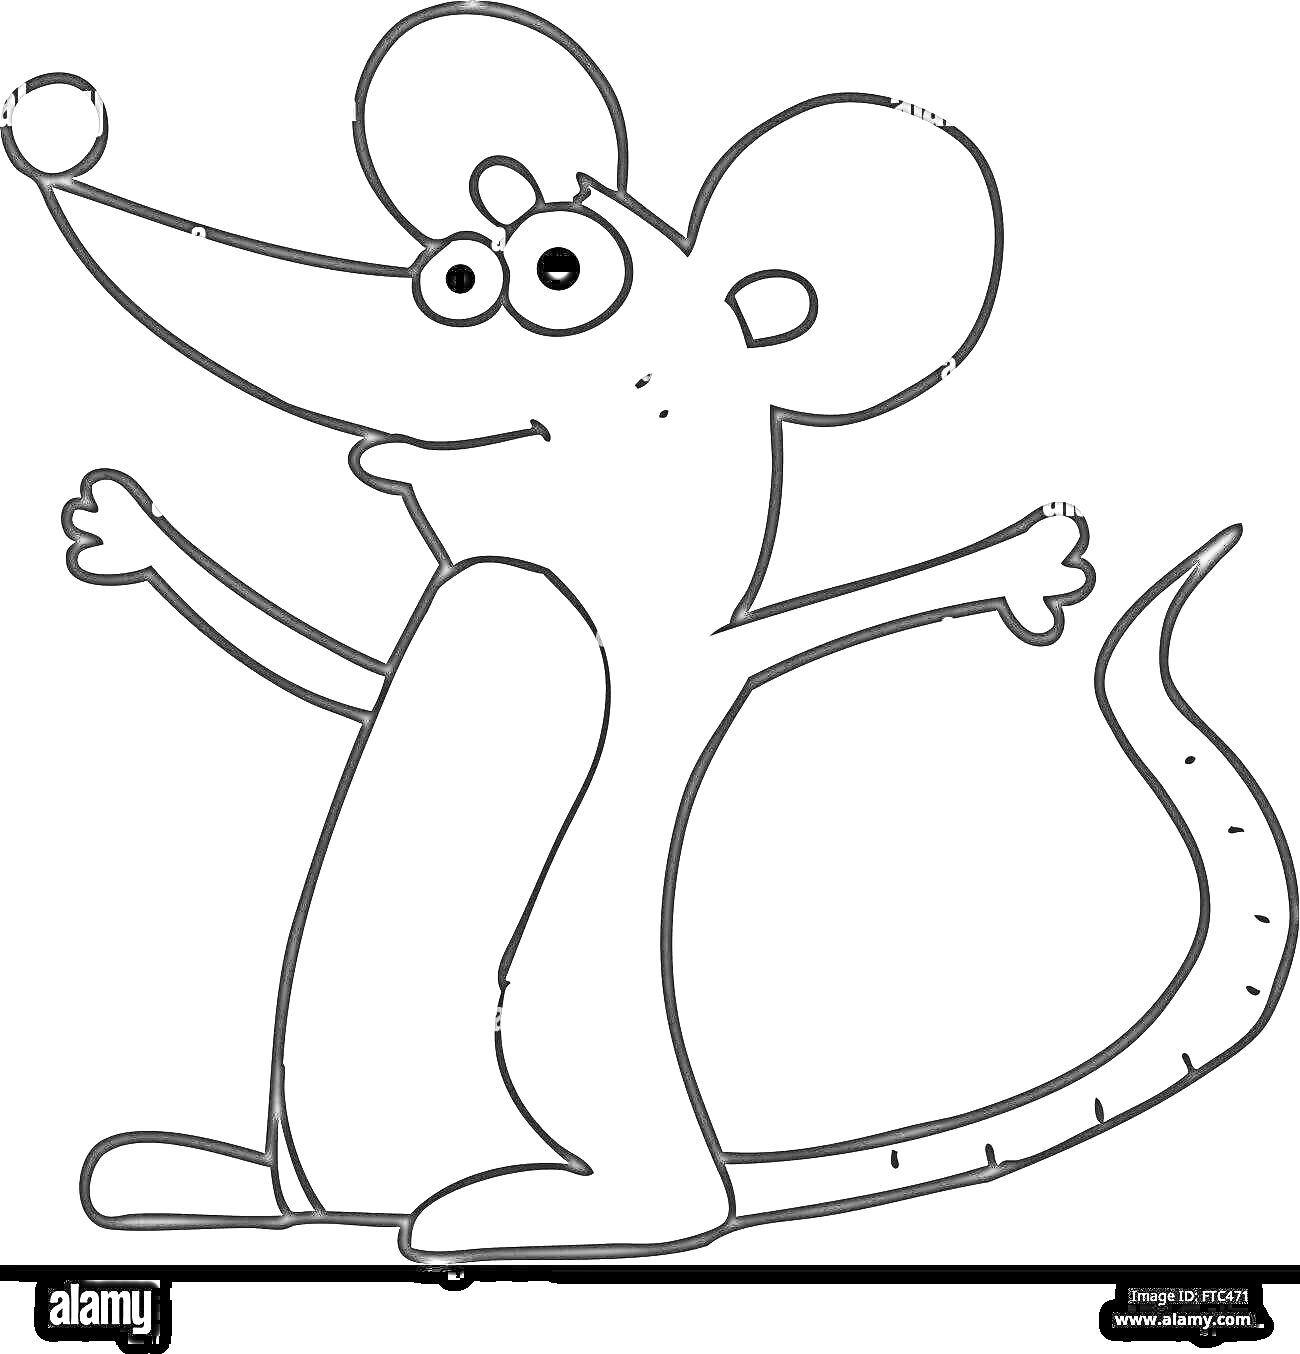 Раскраска Мышь с вытянутыми руками и длинным хвостом